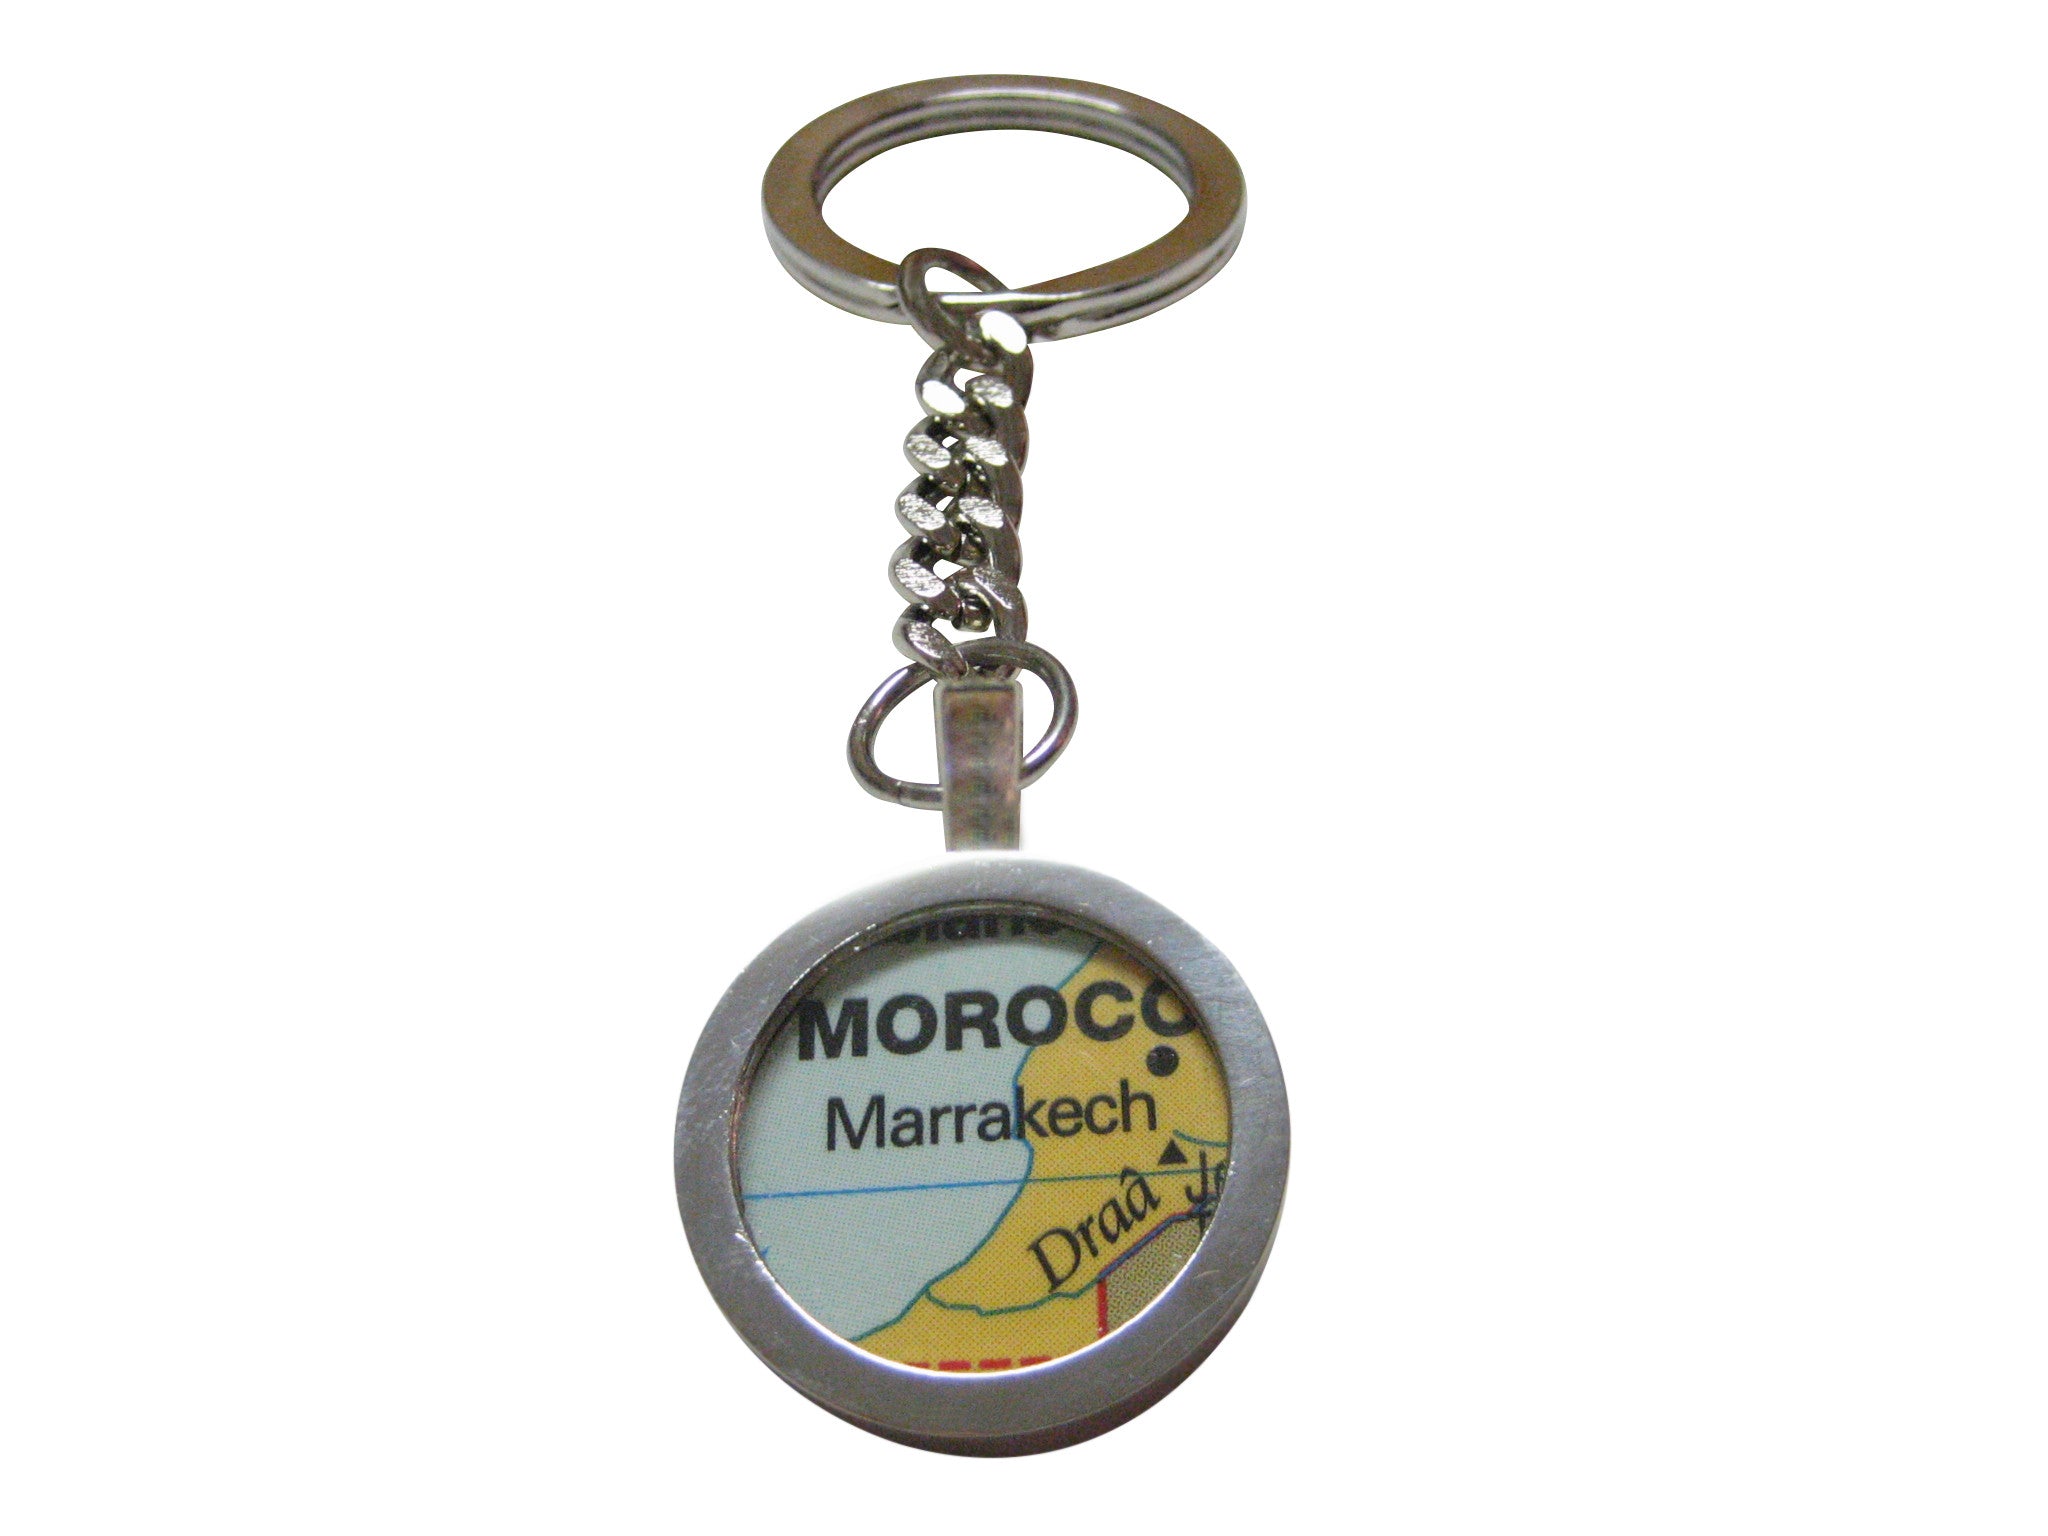 Marrakech Morocco Map Pendant Key Chain